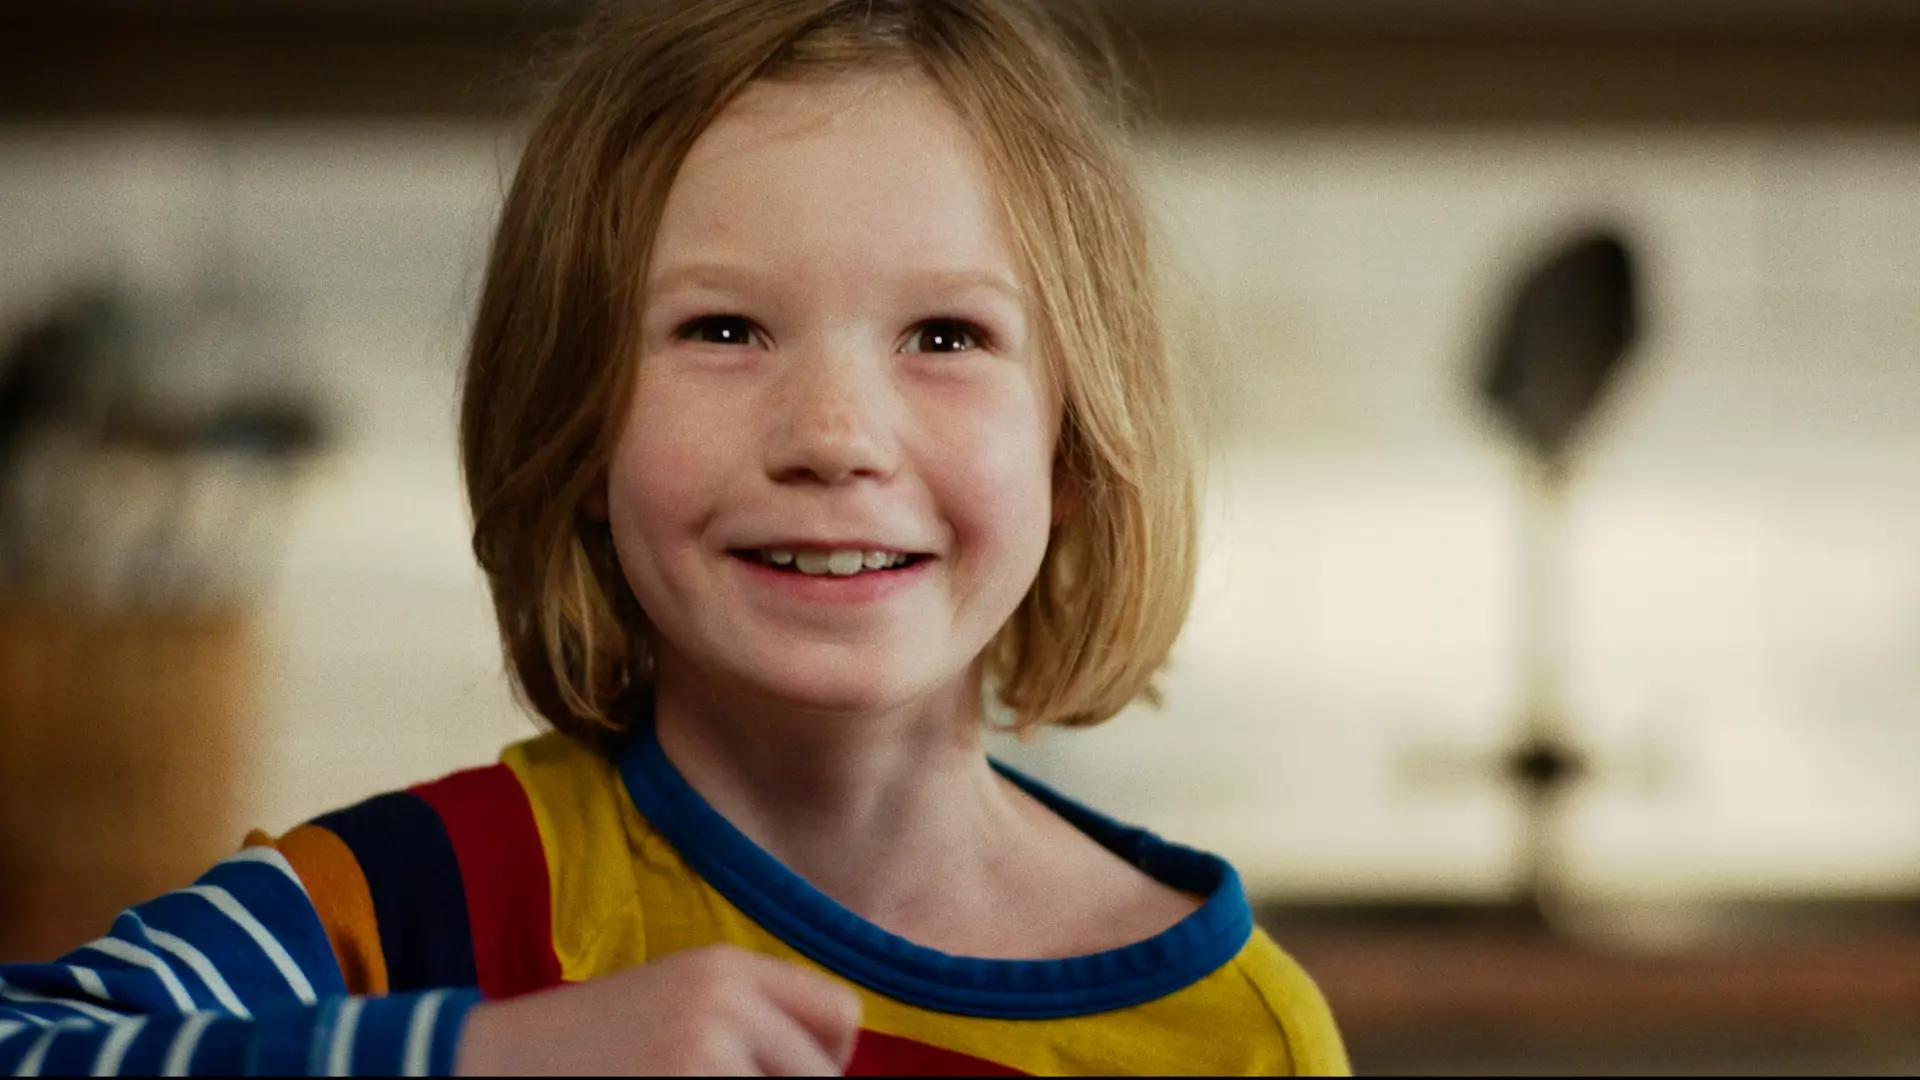 Nærbilde av ei ung jente med rødlig kort hår som smiler.